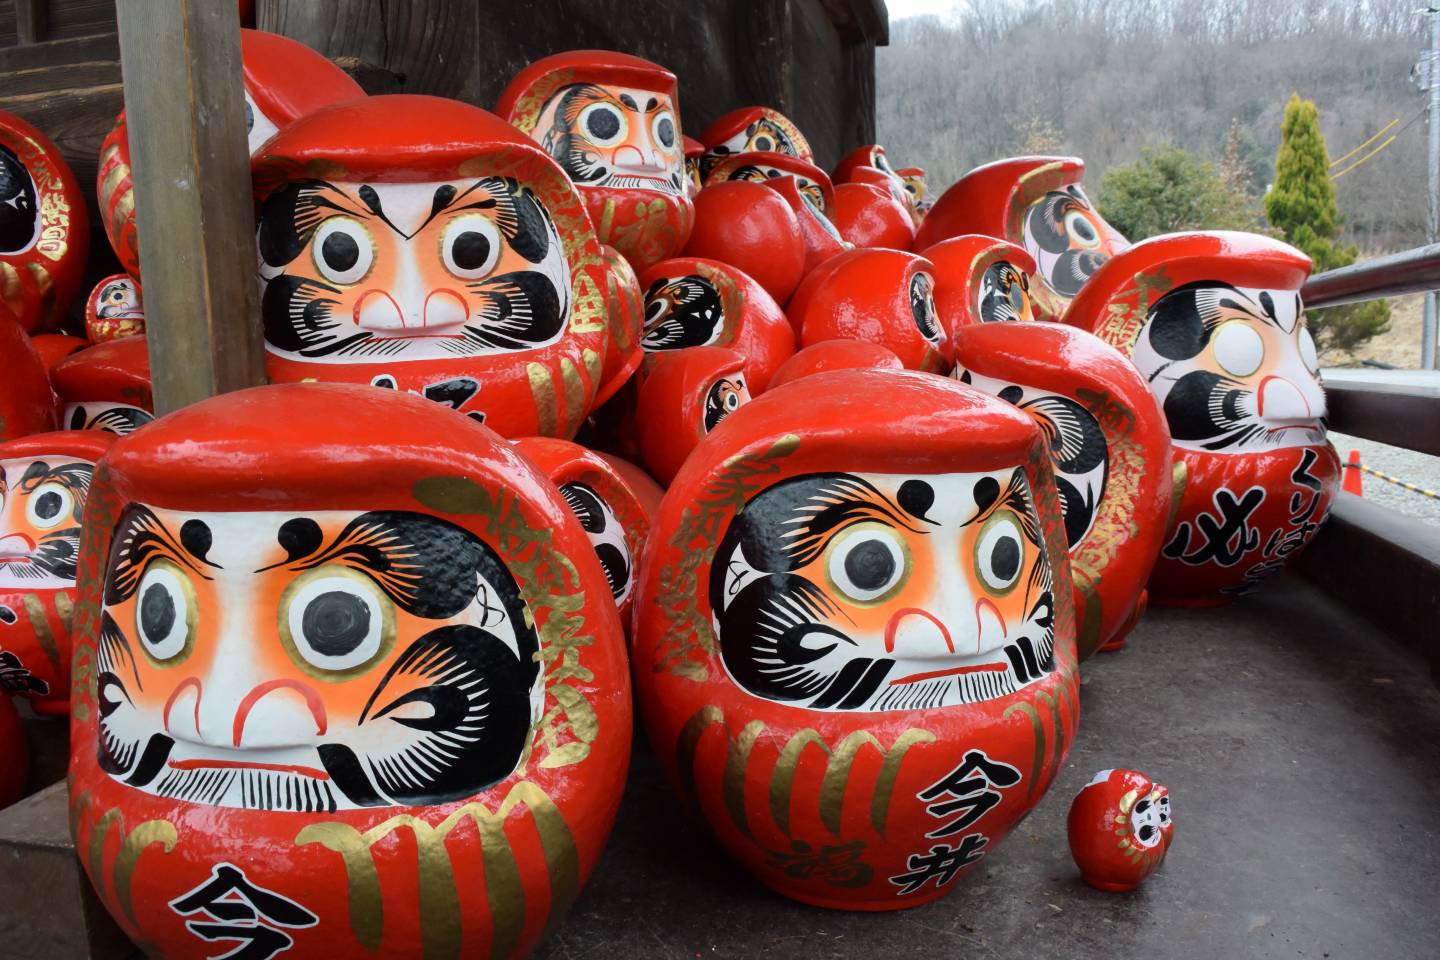 Sammlung japanischer Daruma (dickbauchige, rote Figuren mit markantem Gesicht)